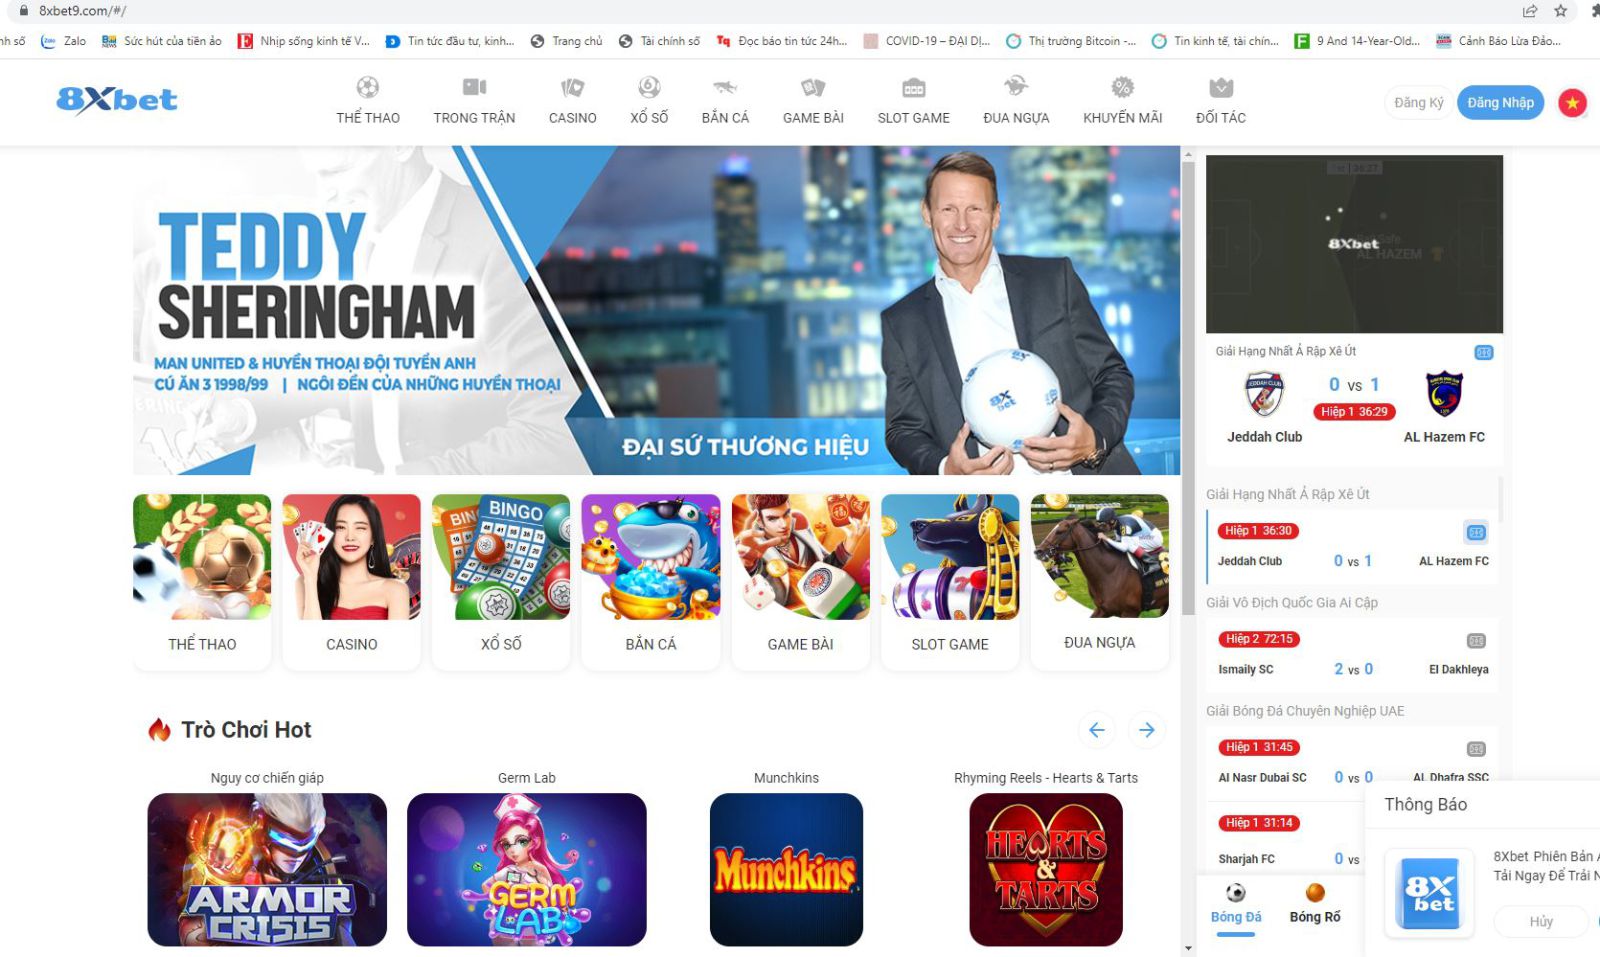 Tràn lan quảng cáo cờ bạc, cá độ online trên mạng xã hội